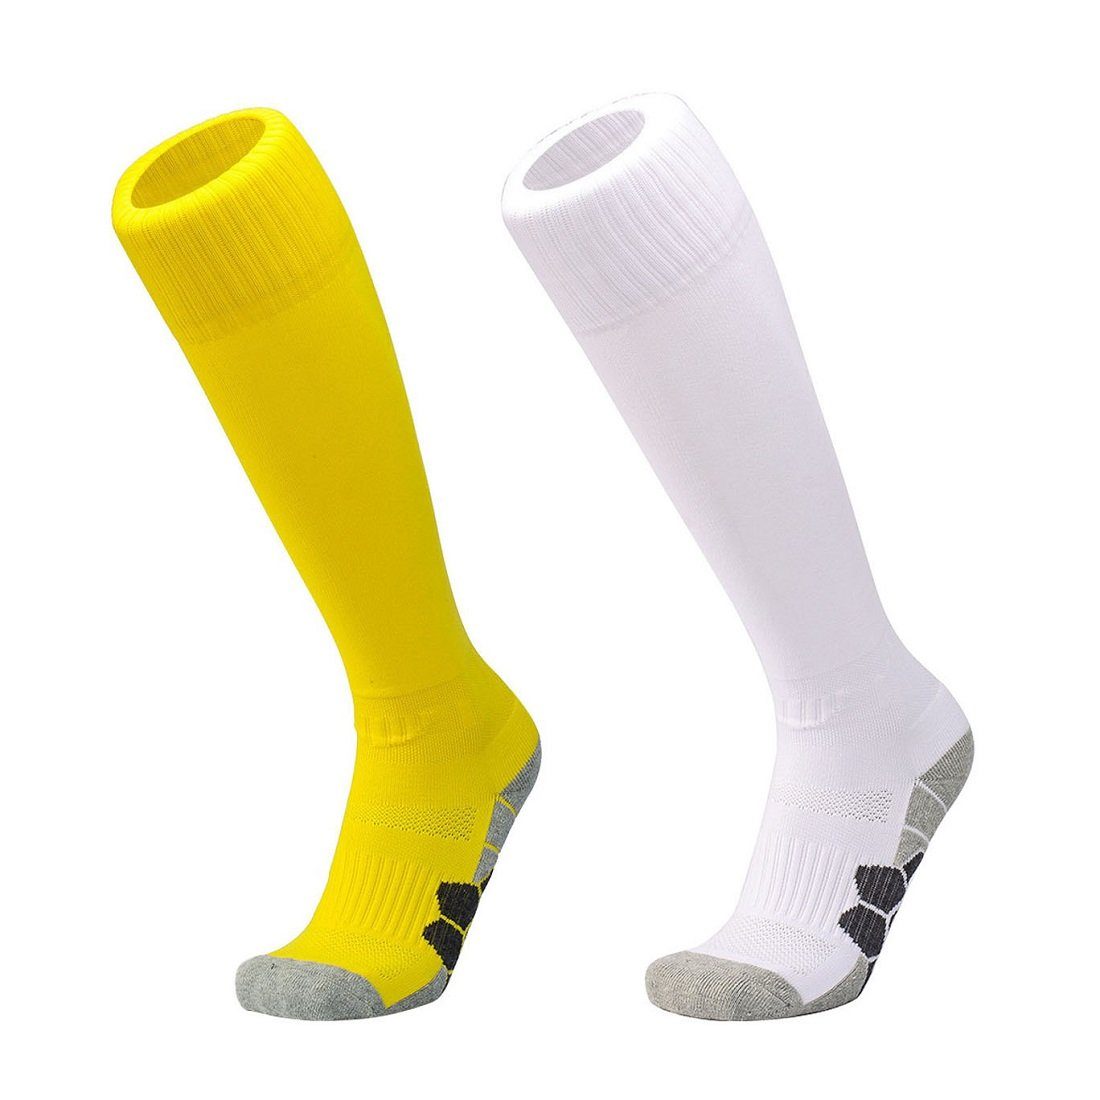 DEBAIJIA Fußball Stutzenstrümpfe Unisex Fußballsocken Sportsocken Knie Lang Atmungsaktiv 2 Paare - Gelb/Weiß